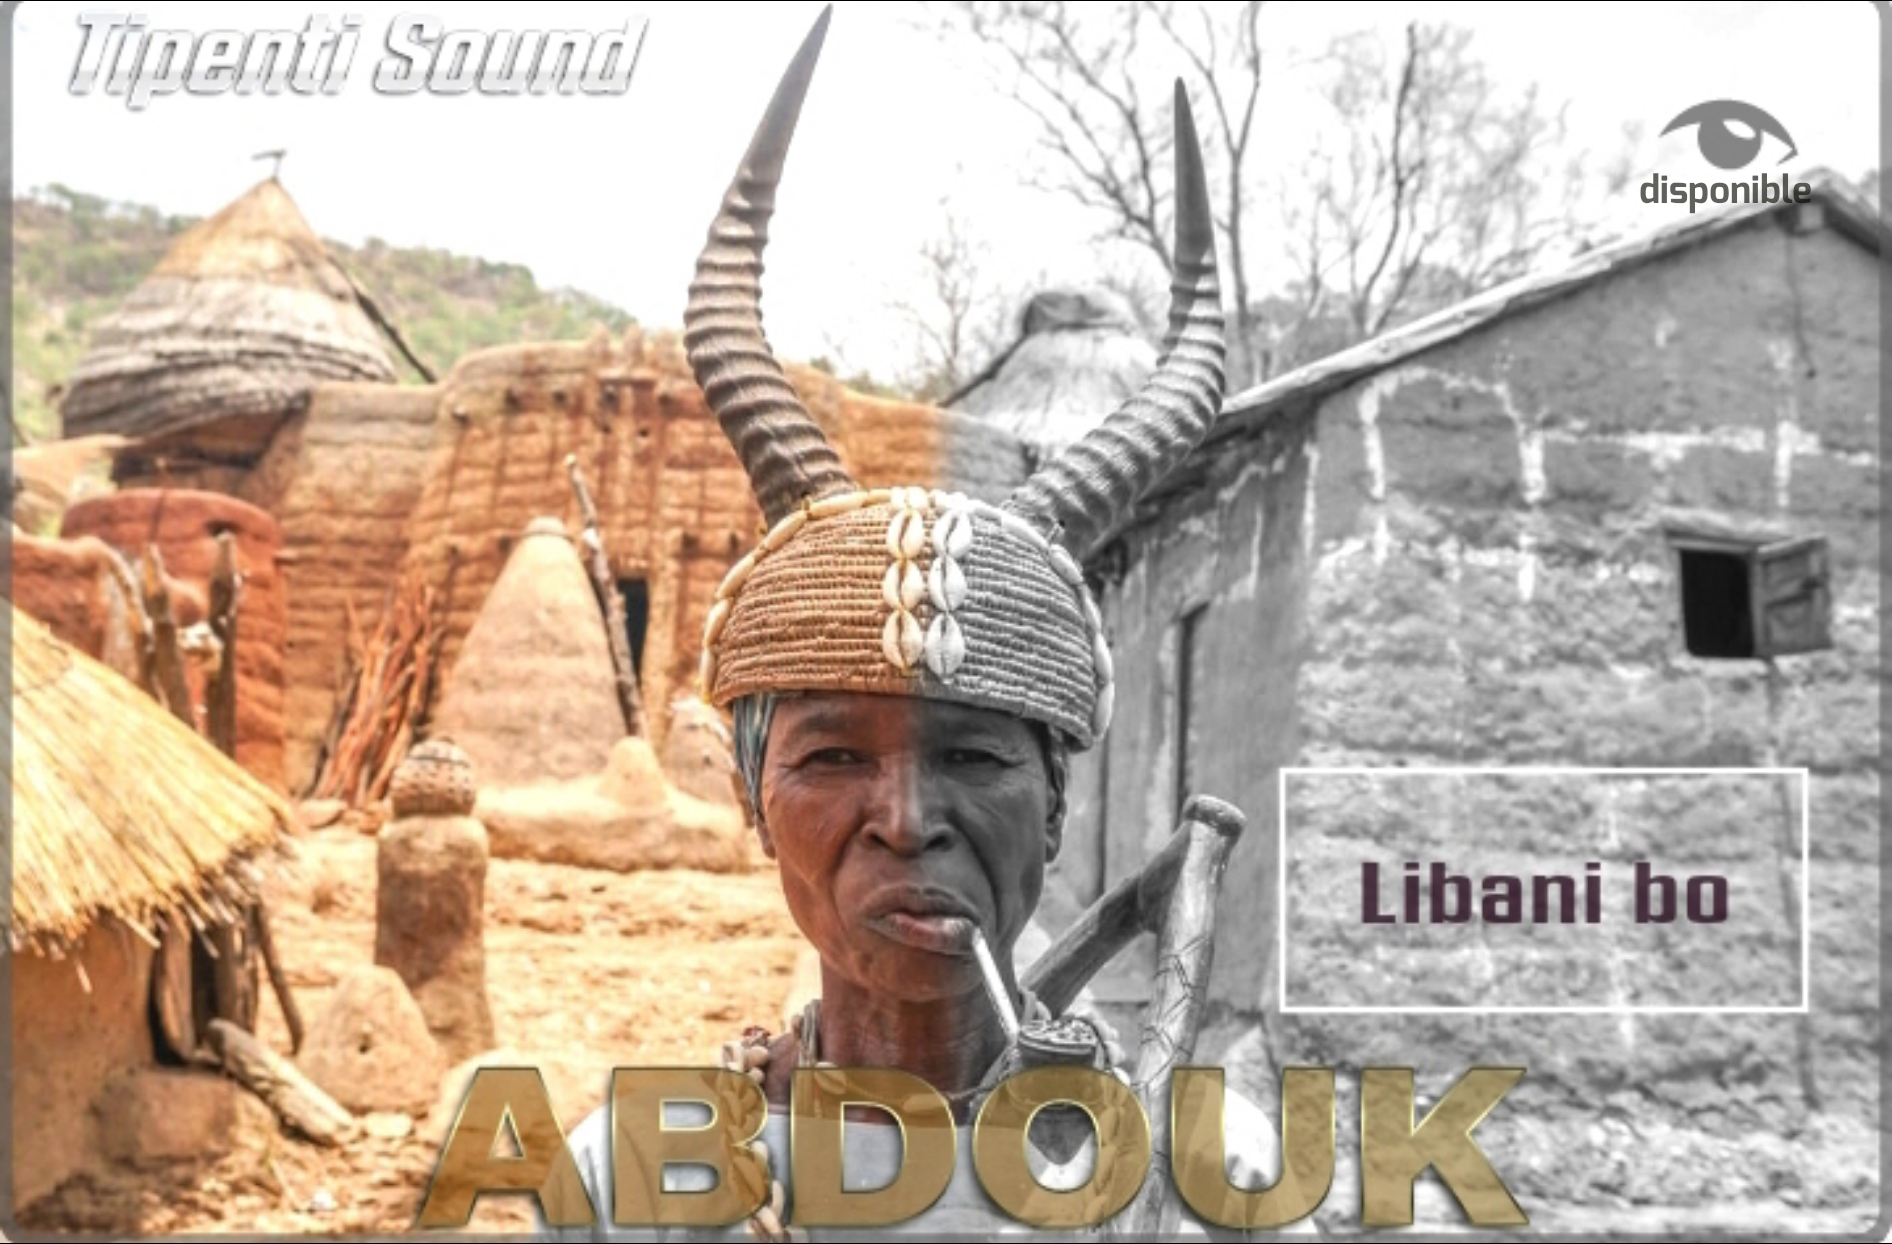 Abdouk-Somba